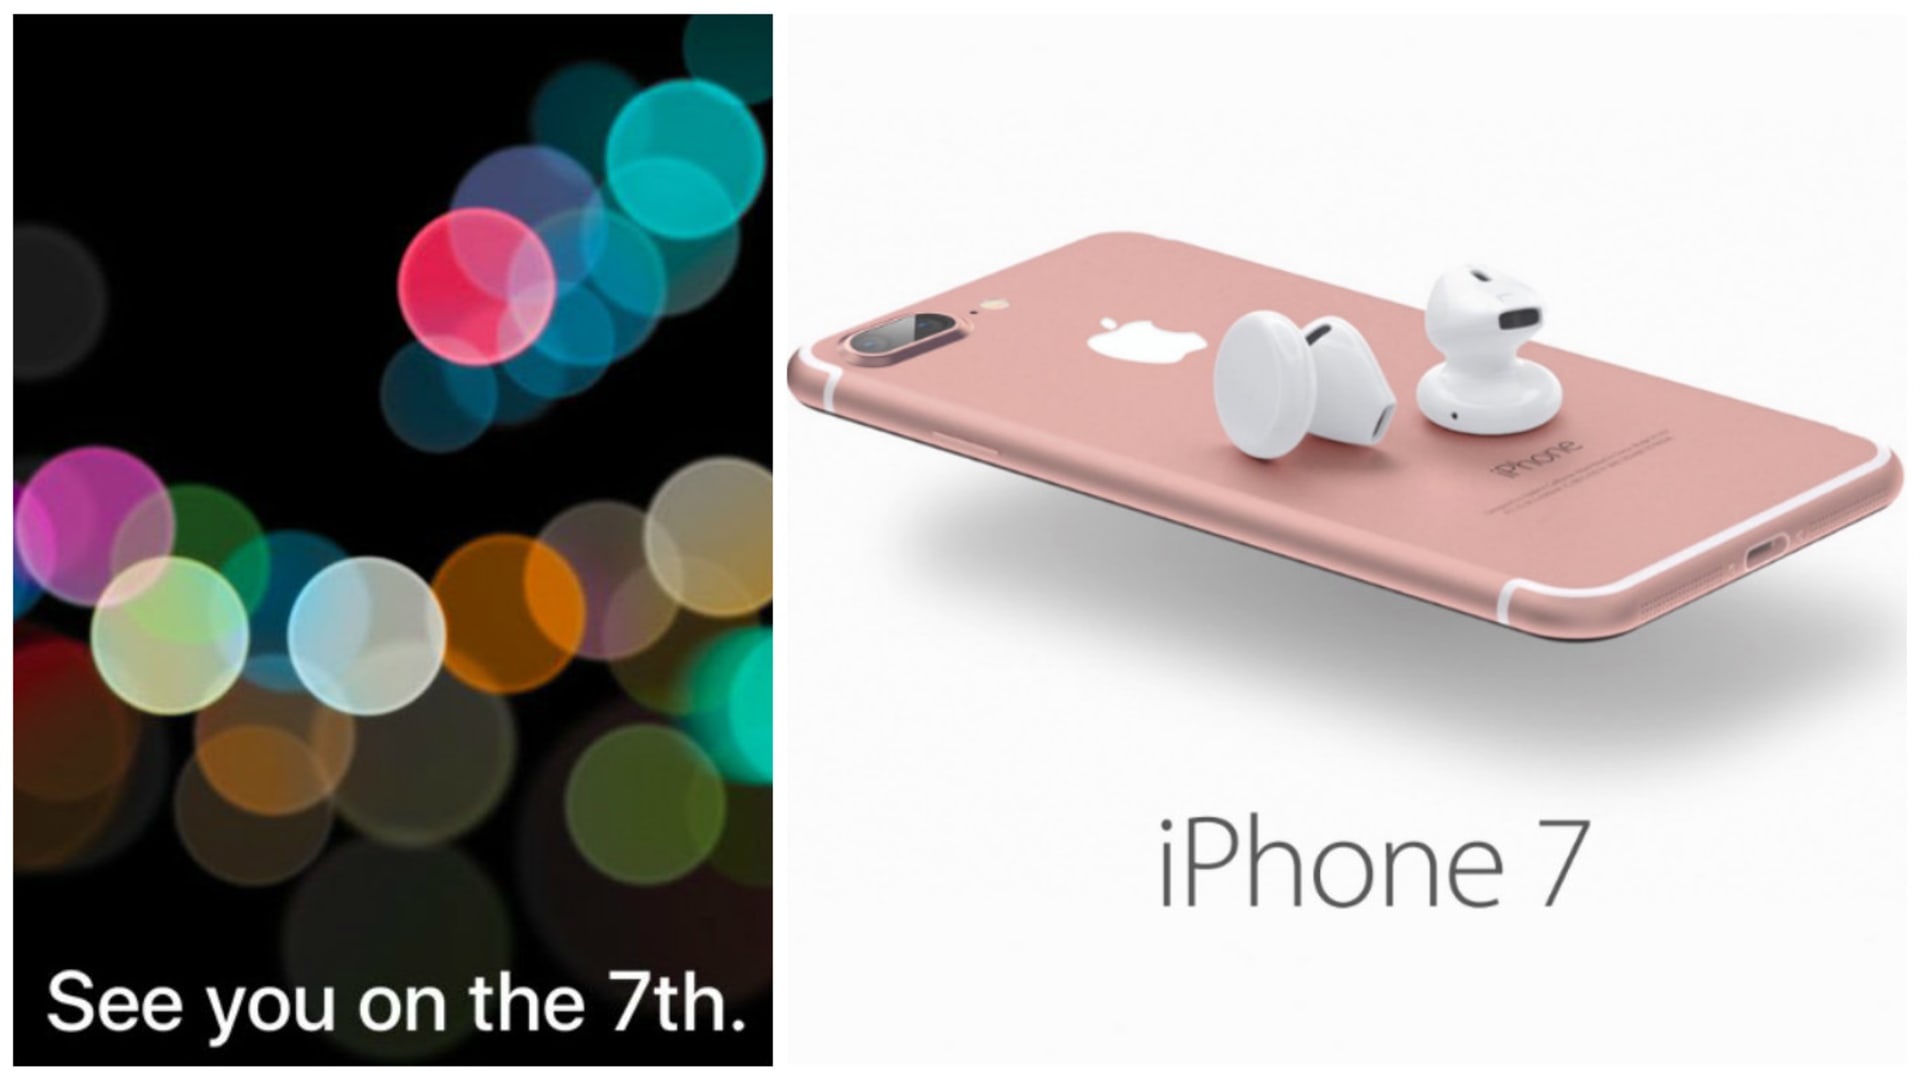 Nový iPhone 7 bude představen na Apple prezentaci 7. září 2016.